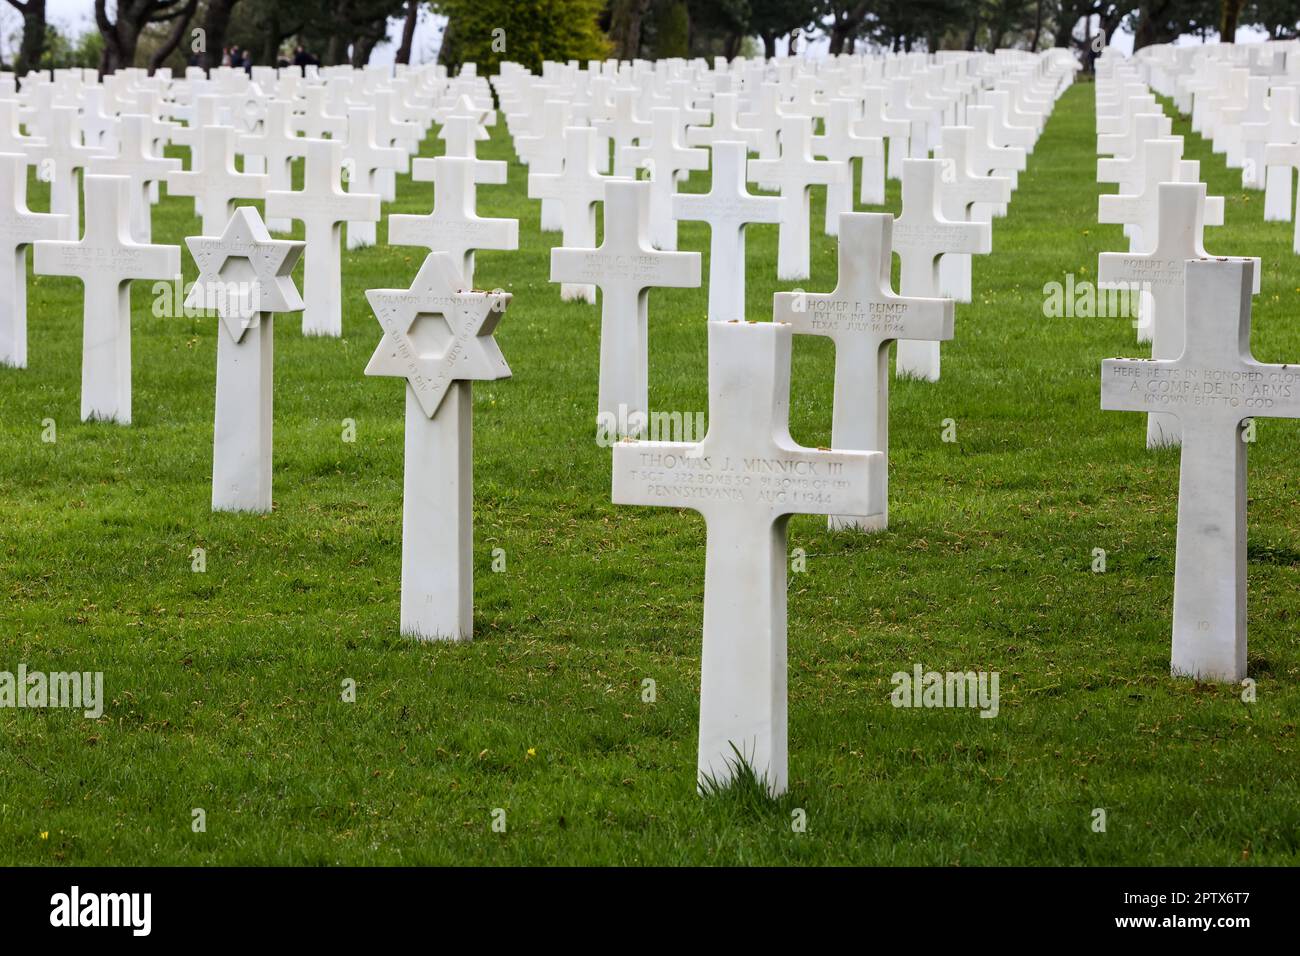 Der amerikanische Friedhof und das Denkmal der Normandie, der amerikanische Friedhof der Normandie, der amerikanische Friedhof, in, Frankreich, befindet sich, in, Colleville-sur-Mer, Normandie, gegründet von den USA Erste Armee am 8. Juni 1944 als erste, amerikanischer Friedhof, auf europäischem Boden, Im Zweiten Weltkrieg Der Friedhof erstreckt sich über 172,5 Hektar und beherbergt die Gräber von 9.386, militärisch Toten, von denen die meisten ihr Leben bei der Landung und den anschließenden Operationen verloren haben. Stockfoto